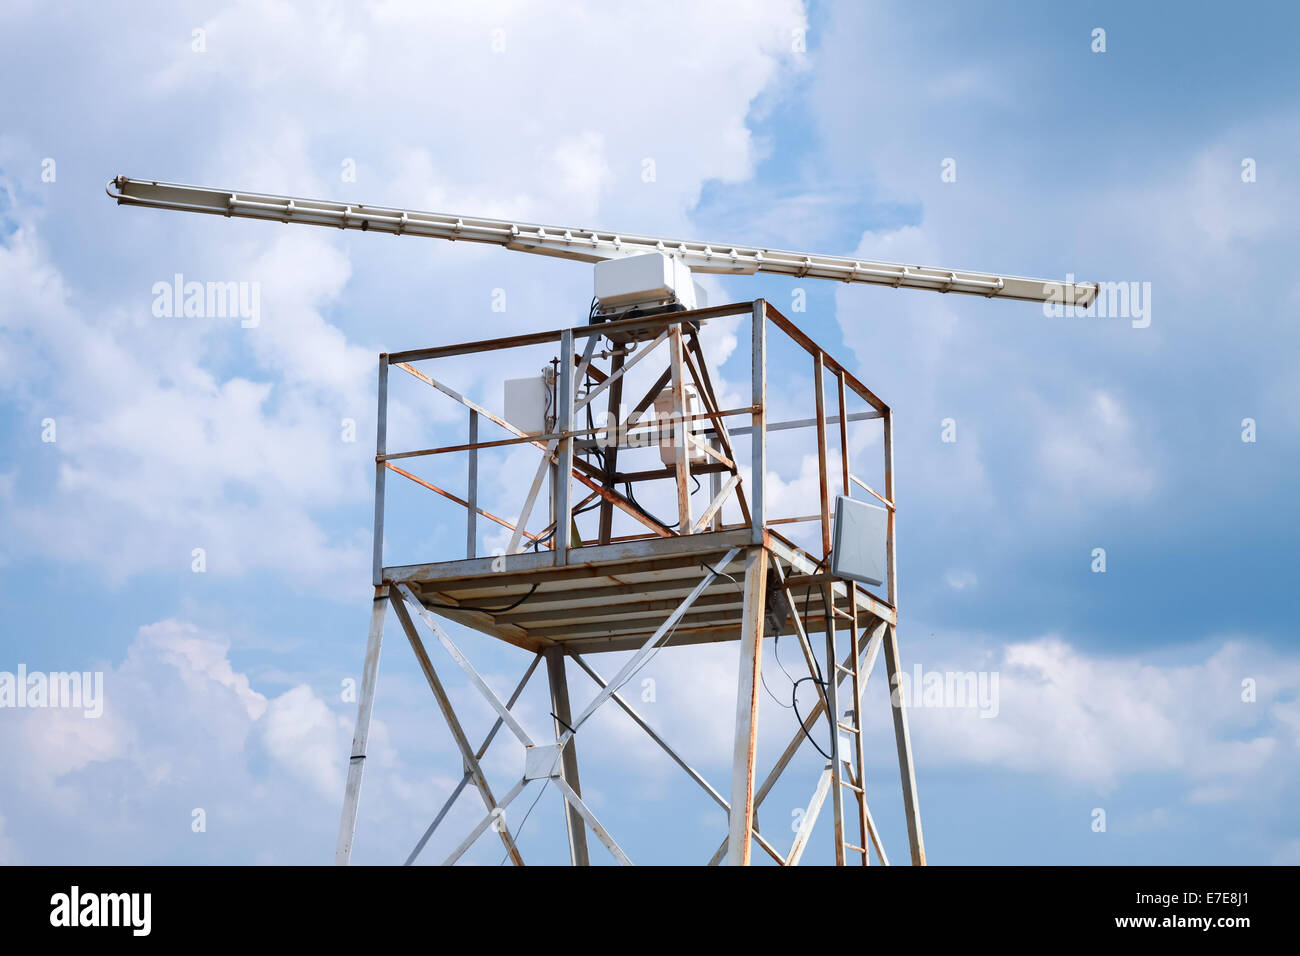 La station radar au-dessus de la tour blue cloudy sky Banque D'Images